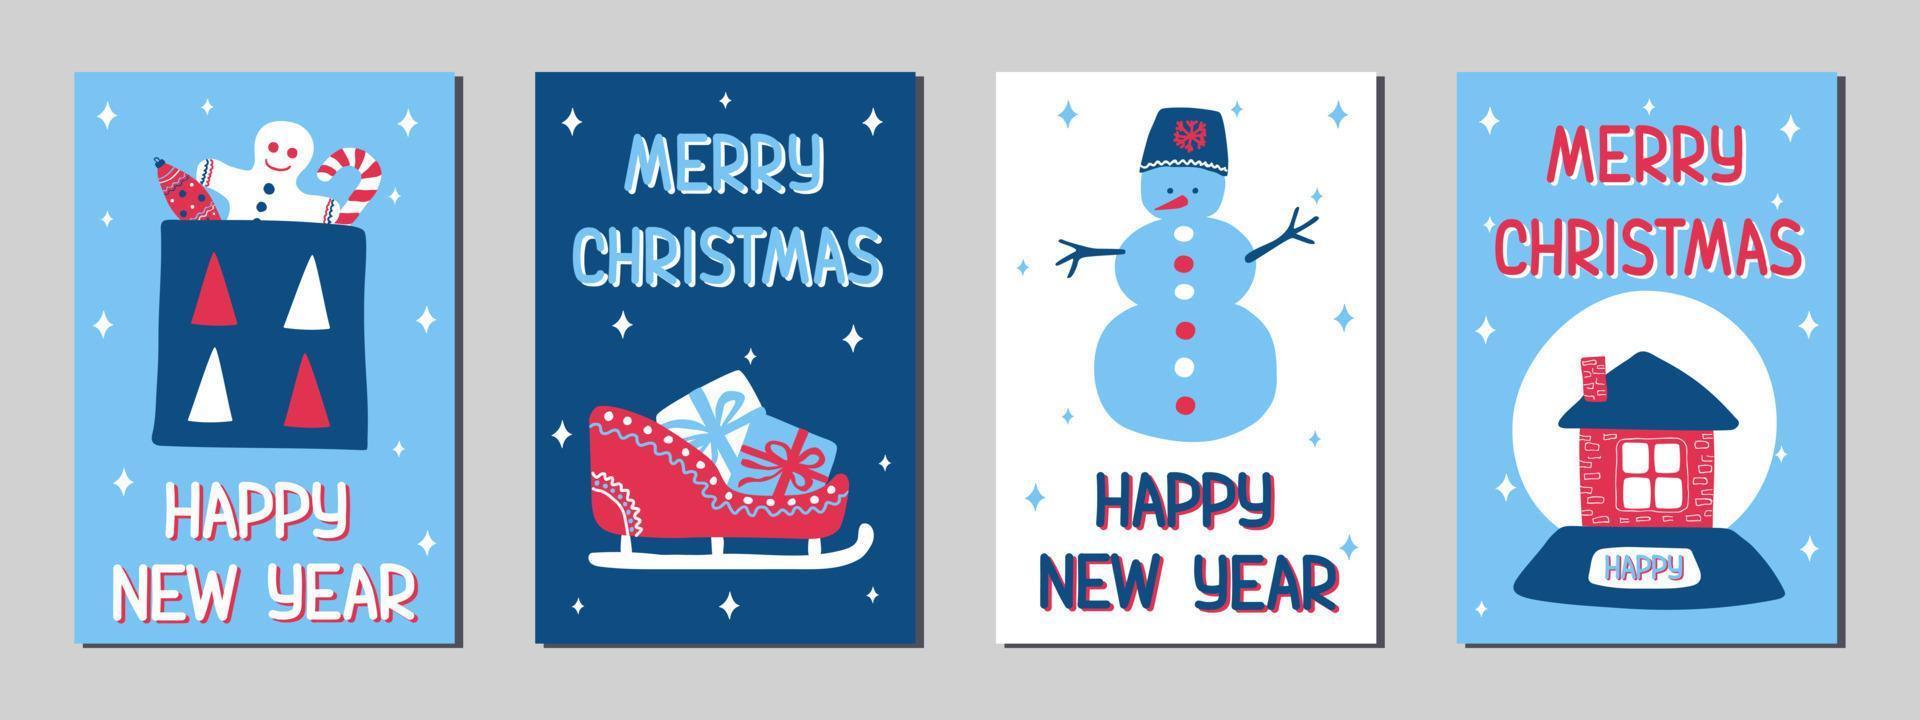 tarjetas de felicitación de navidad y año nuevo en el estilo de garabato escandinavo, colores clásicos azul, rosa y blanco. ilustraciones vectoriales de stock con símbolos de vacaciones - regalo, trineo, hombre de pan de jengibre, muñeco de nieve vector